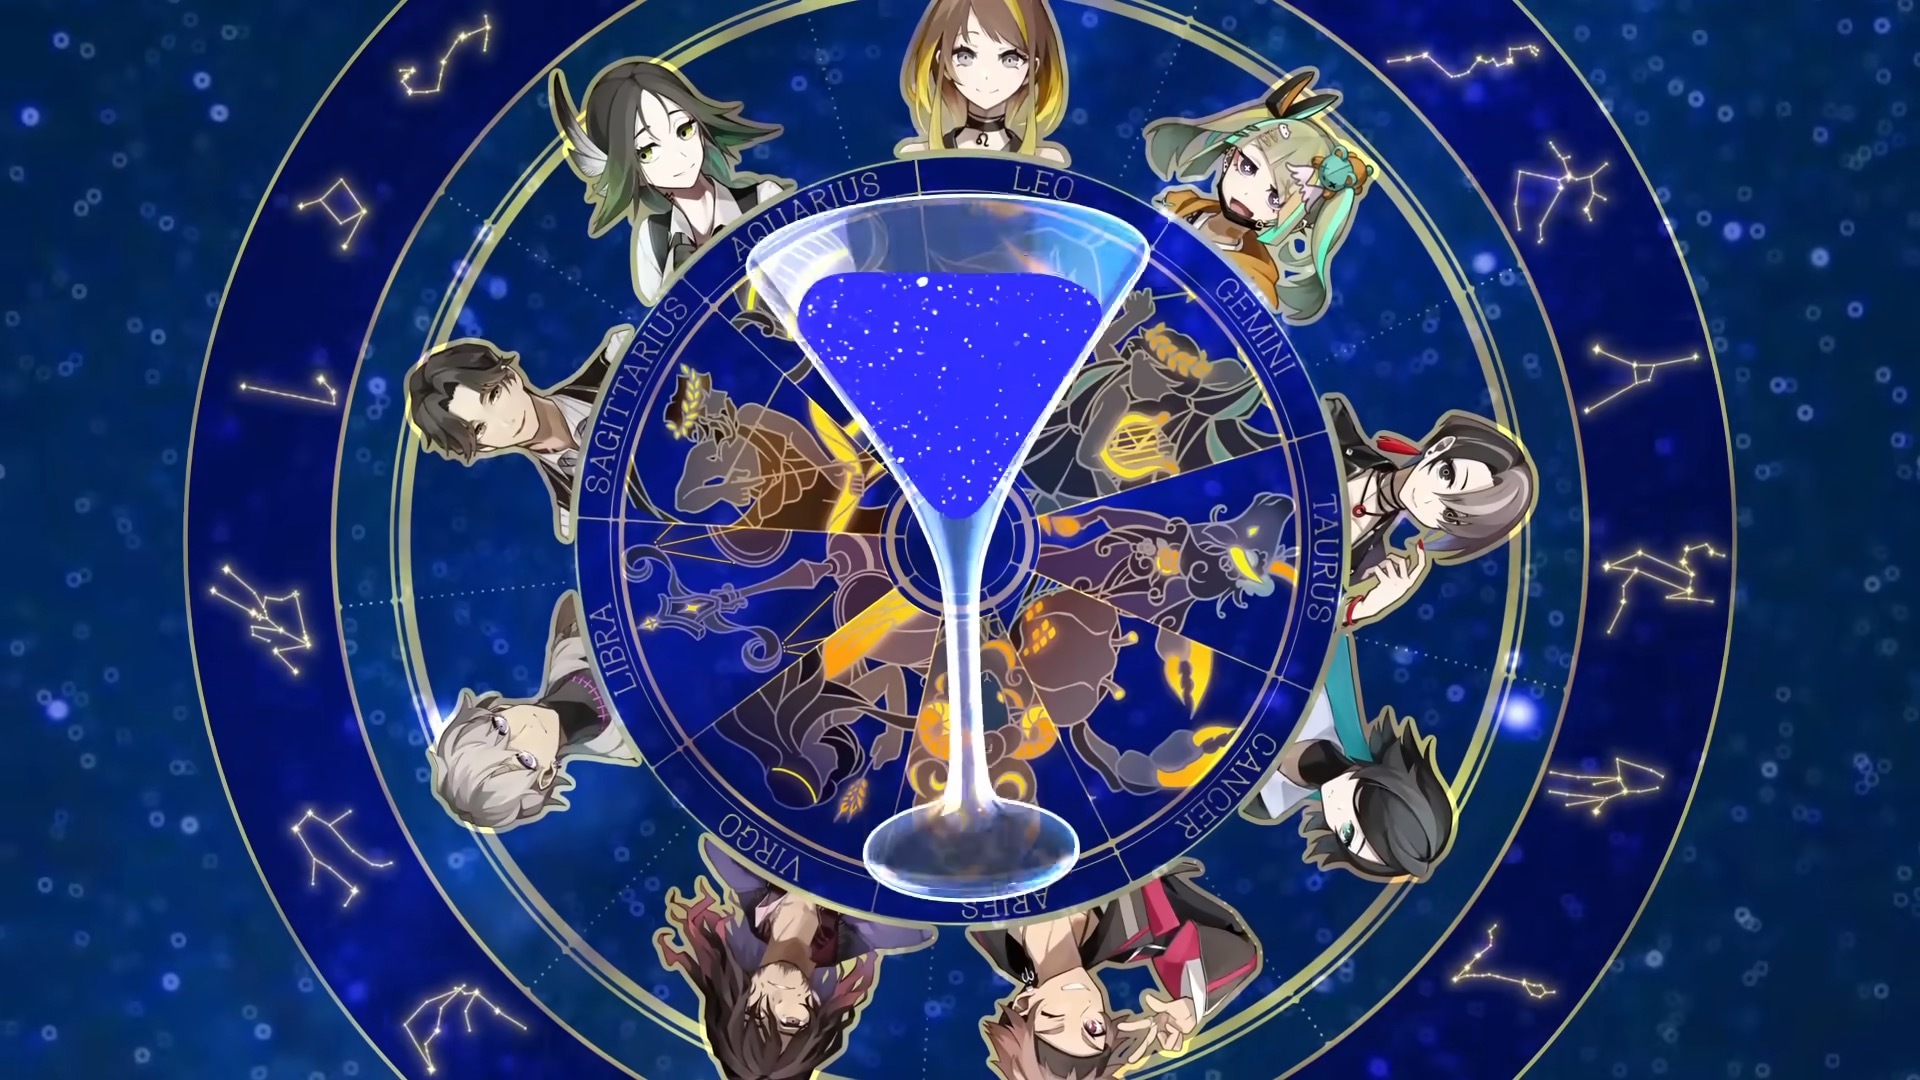 日本一新作 Roguelike SRPG《星辰深渊酒吧》曝光 以星座与酒之力取回珍贵之物！